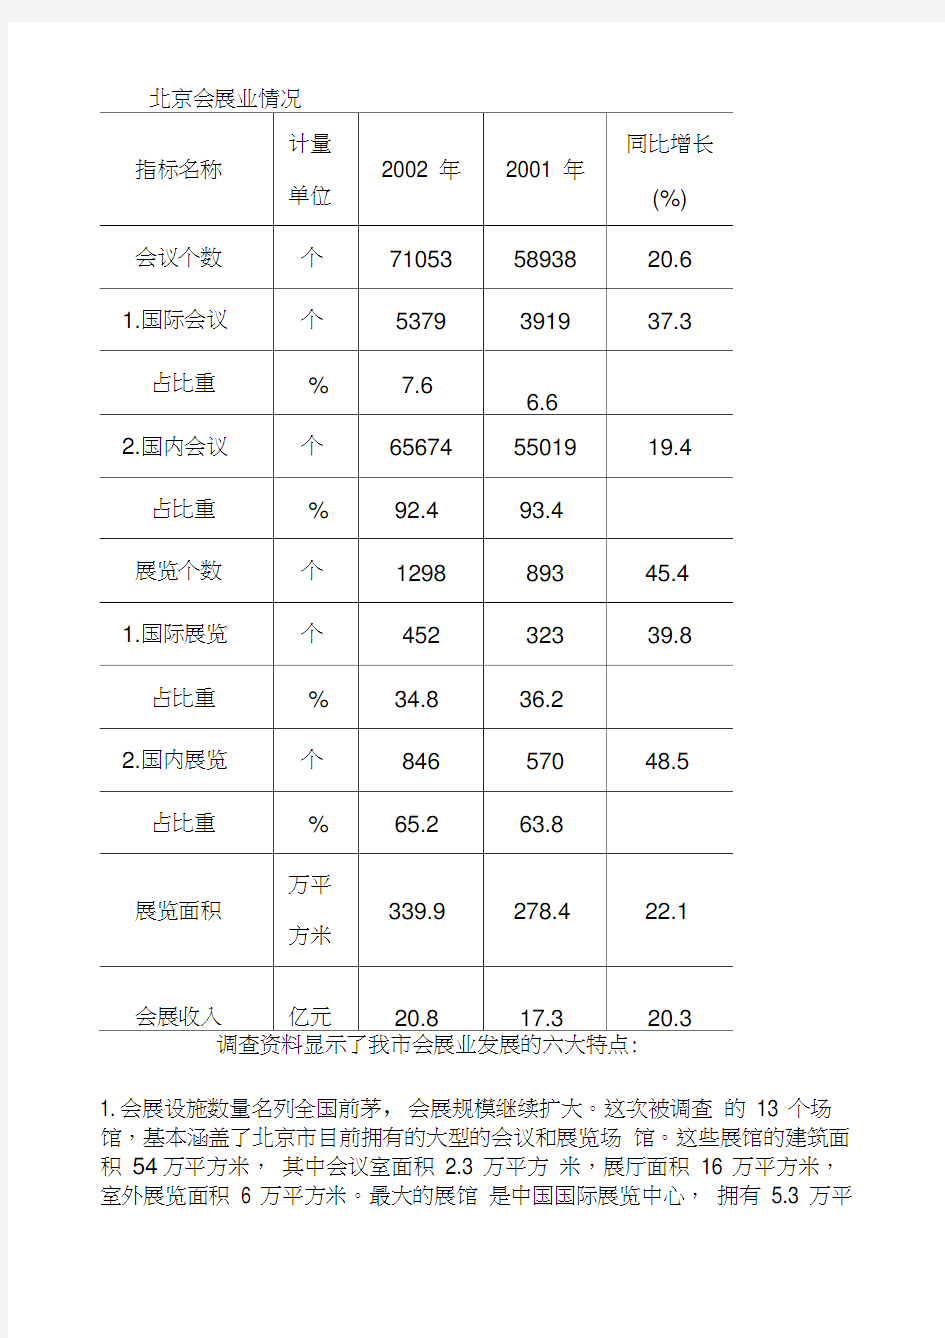 北京市会展业发展统计报告